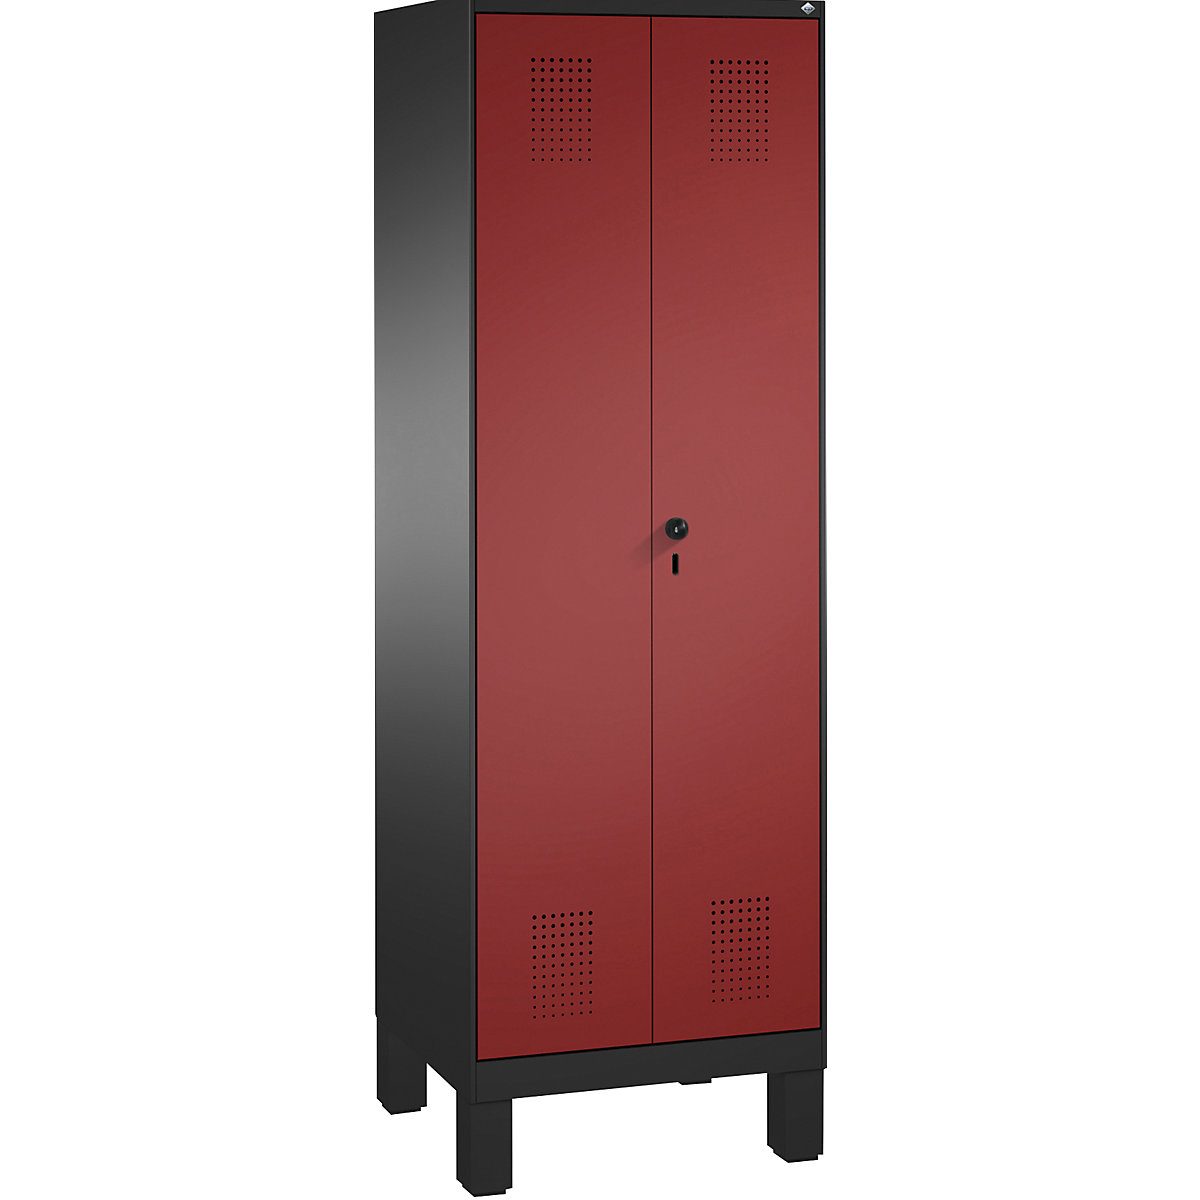 EVOLO tárolószekrény, egymásra csukódó ajtók, lábakkal – C+P, 1 fülke, szélesség 600 mm, 4 polccal, feketésszürke / rubinvörös-7